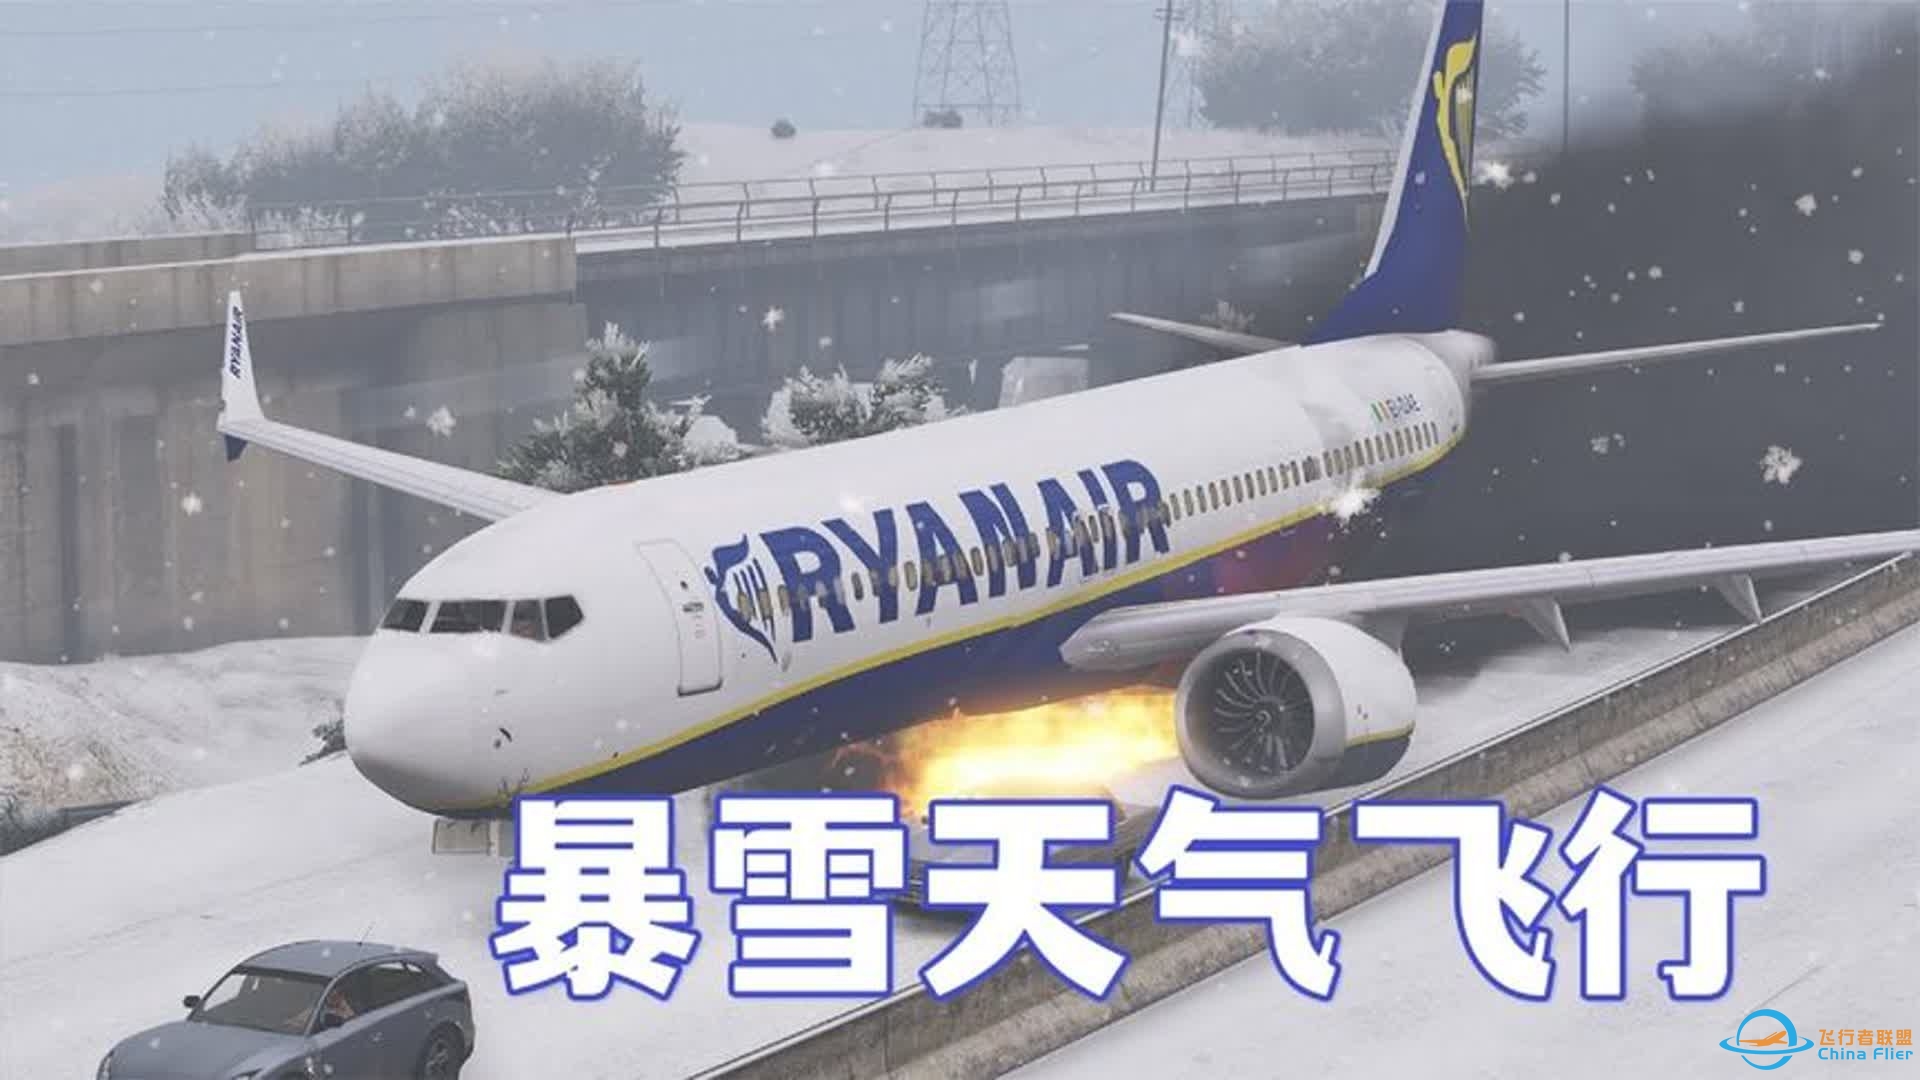 模拟器：飞机在暴雪天气飞行，没想到出现事故，结局紧急迫降-3096 